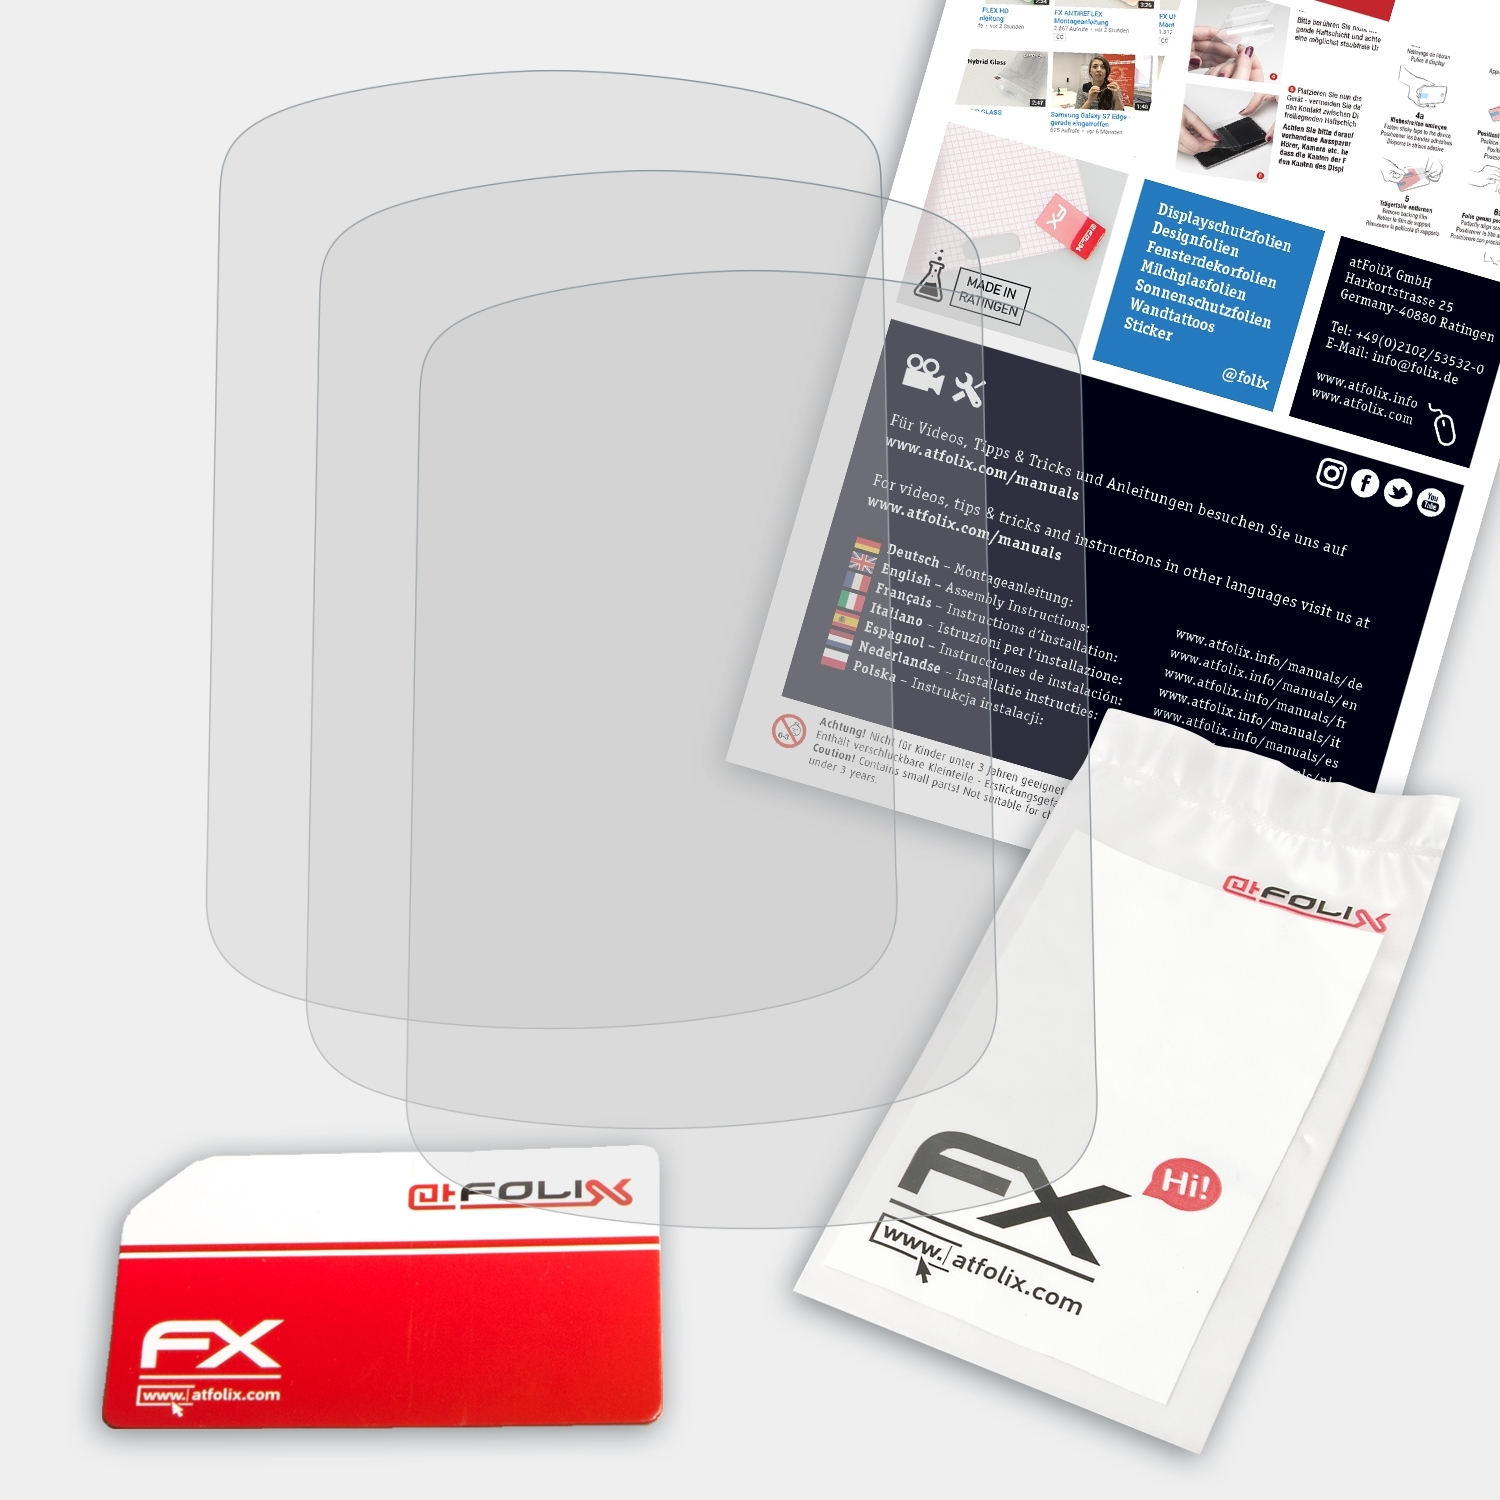 Displayschutz(für Garmin Legend CX) Etrex FX-Antireflex ATFOLIX 3x